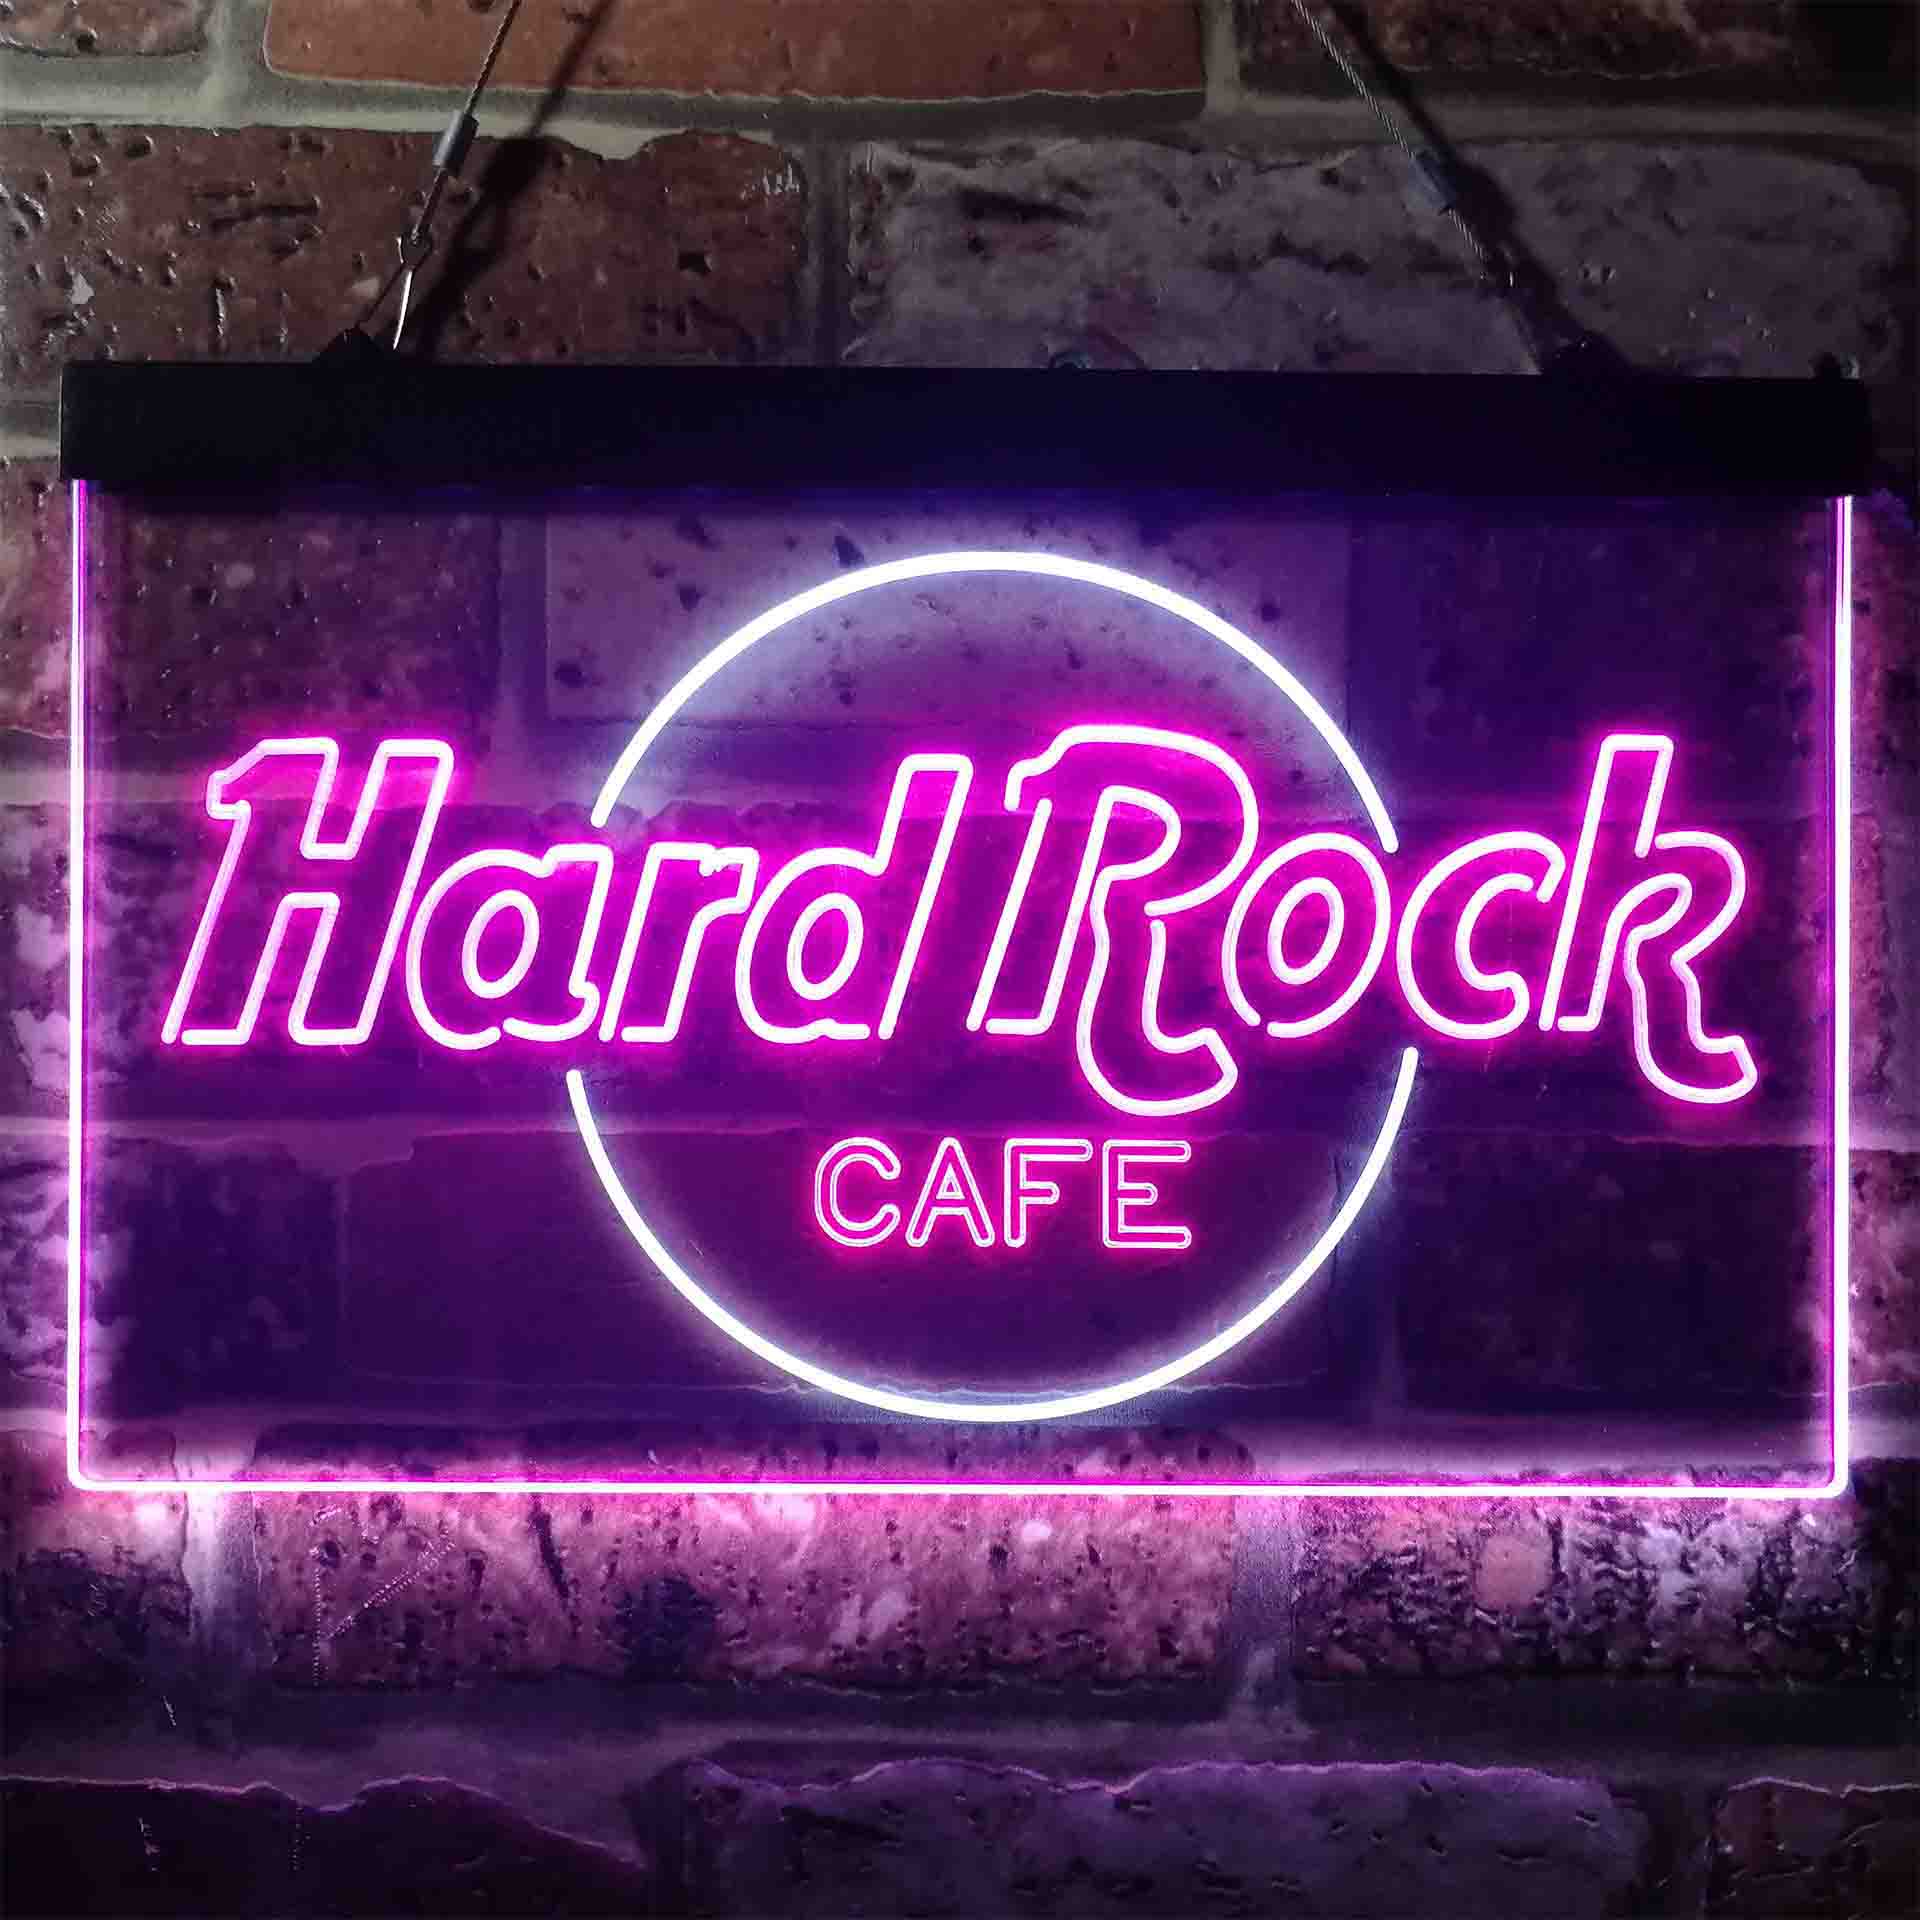 Hard Rock Caf√© Restaurant LED Neon Sign